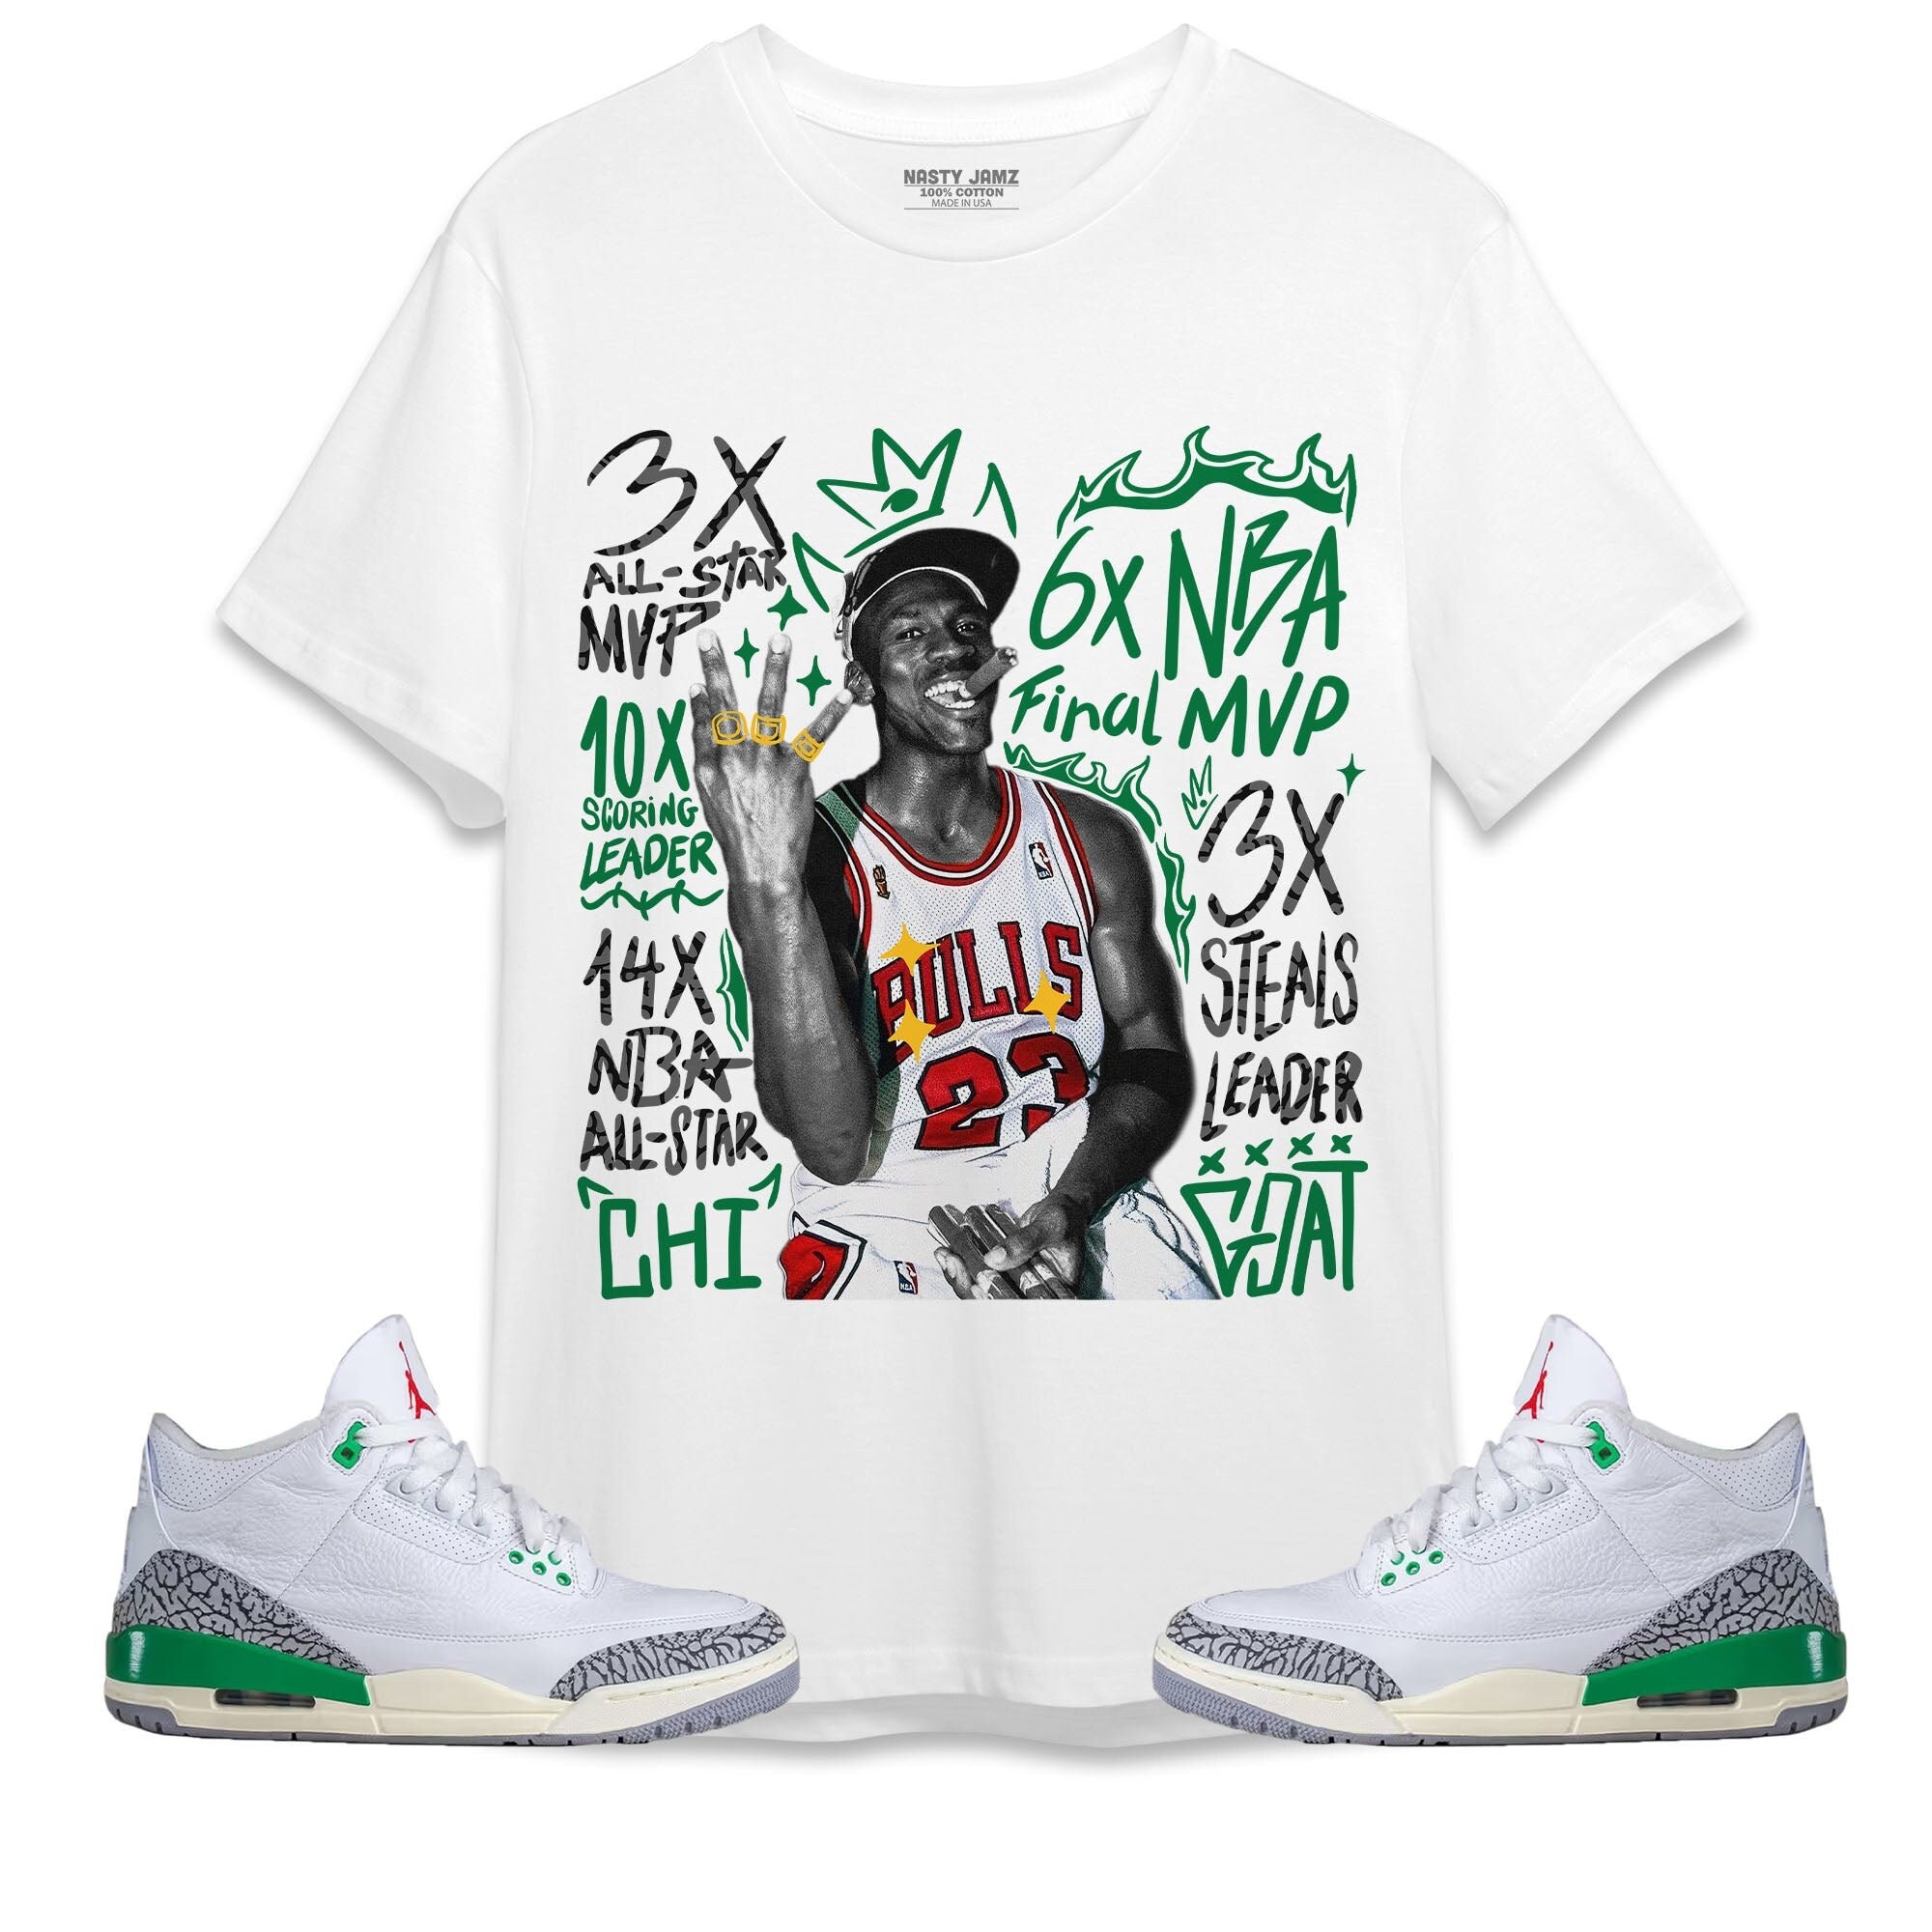 Michael Jordan ''Three Peat'' Vintage Look T-Shirt – Vintage Rap Wear